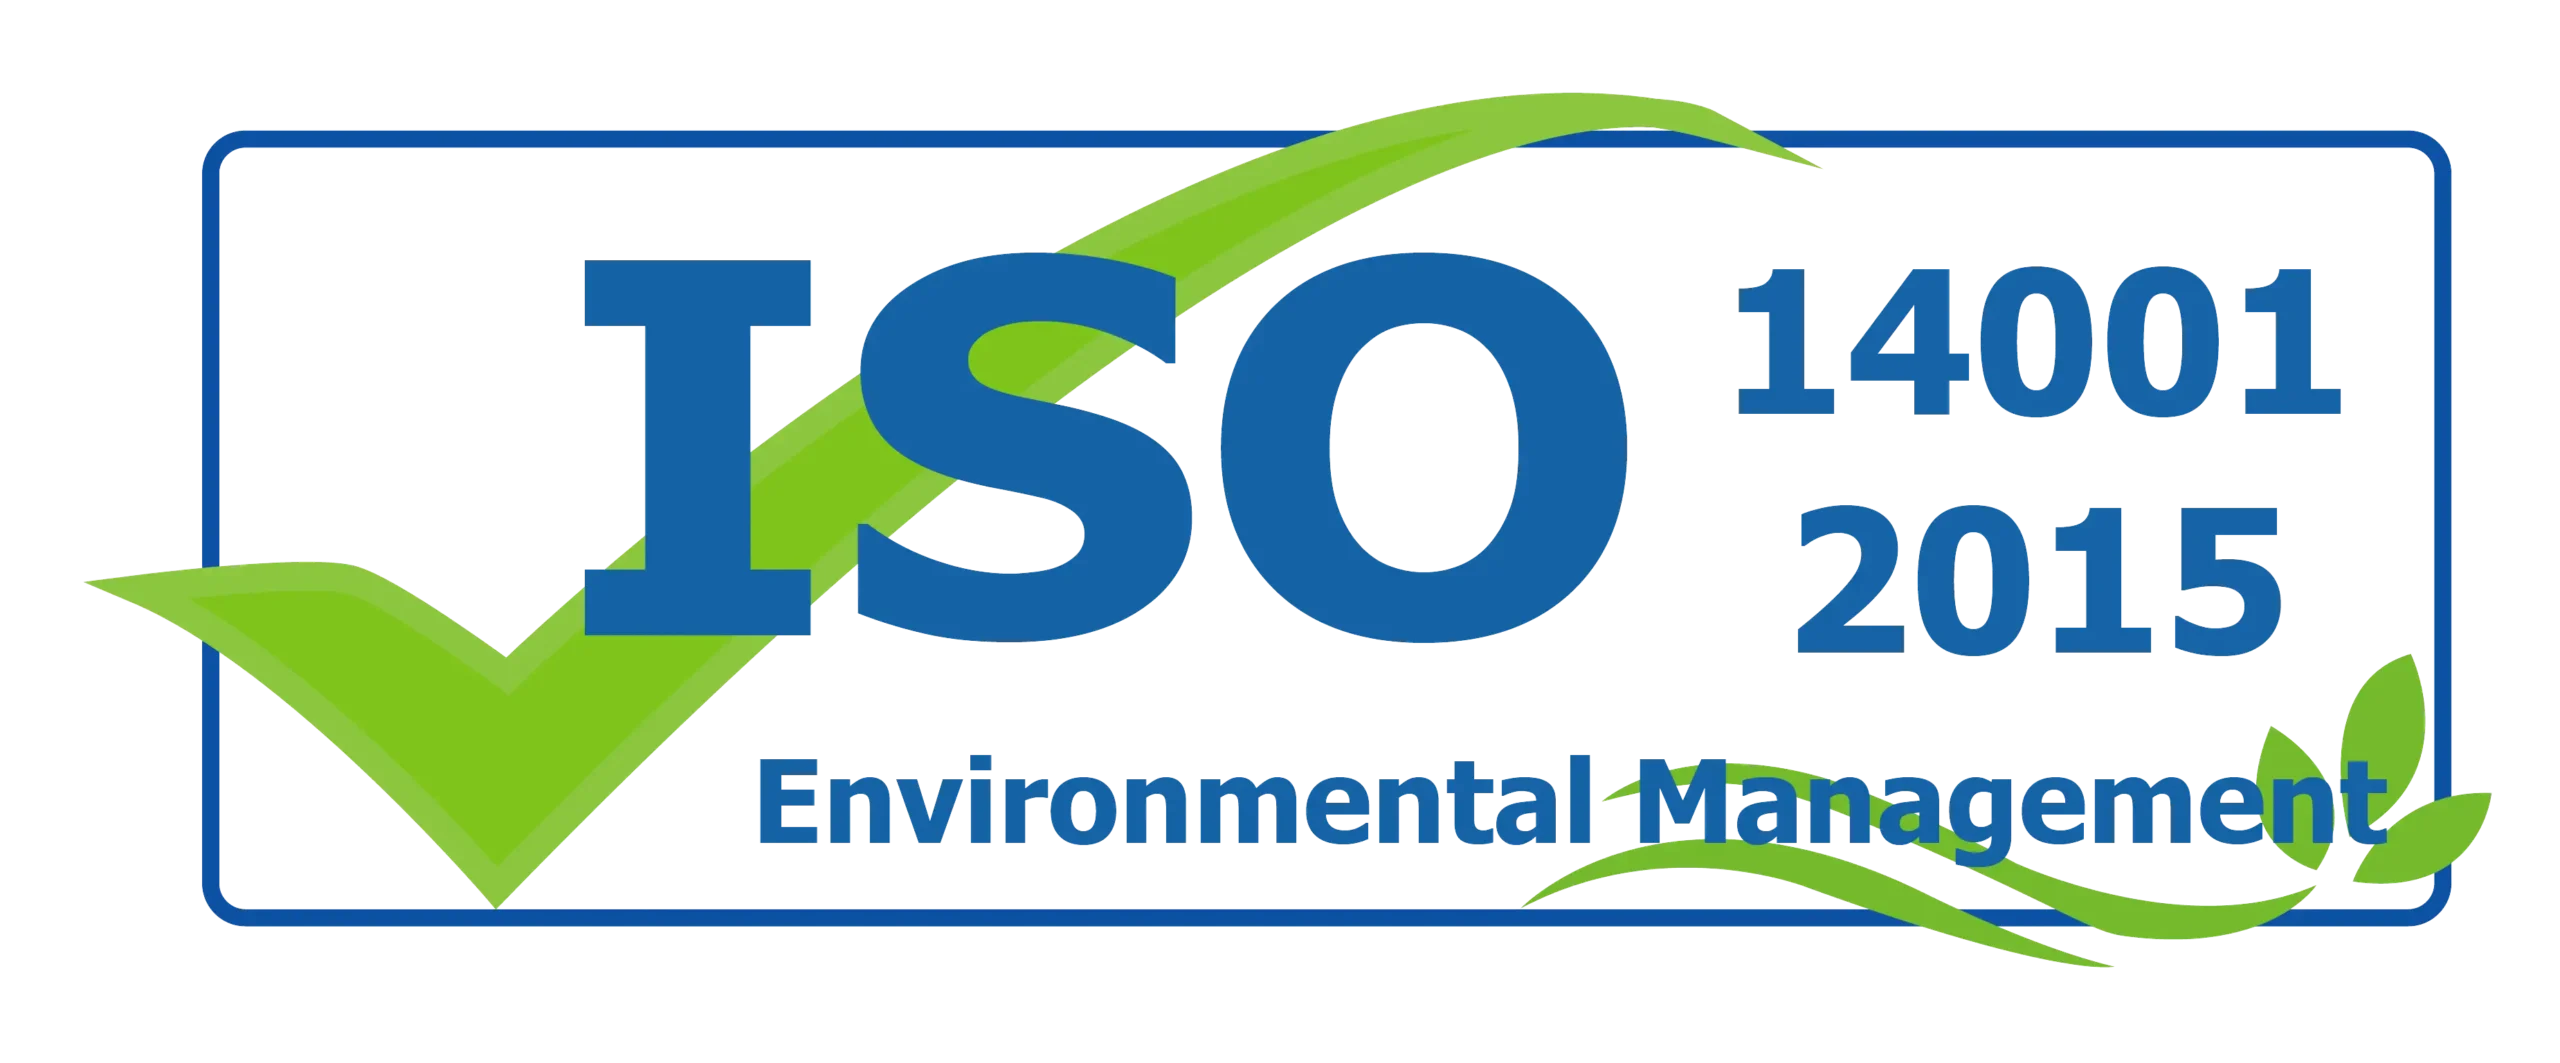 Chứng nhận hệ thống quản lý an toàn môi trường 14001:2015 cho nhà thầu EPC trong lĩnh vực xử lý nước và nước thải